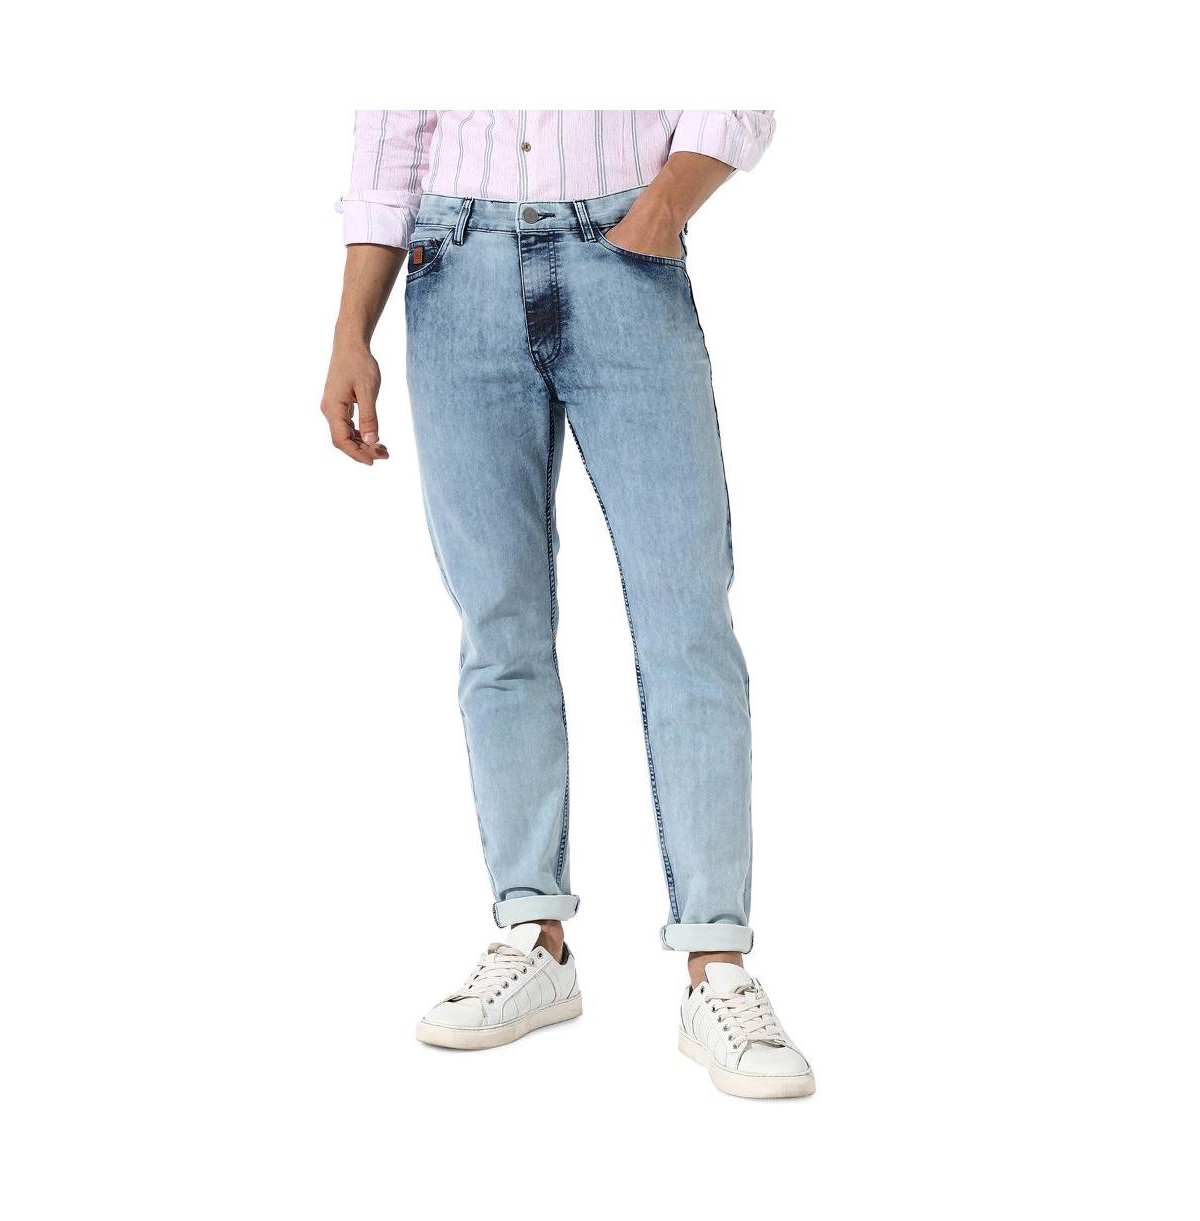 Men's Light-Wash Skinny Fit Denim Jeans - Light blue